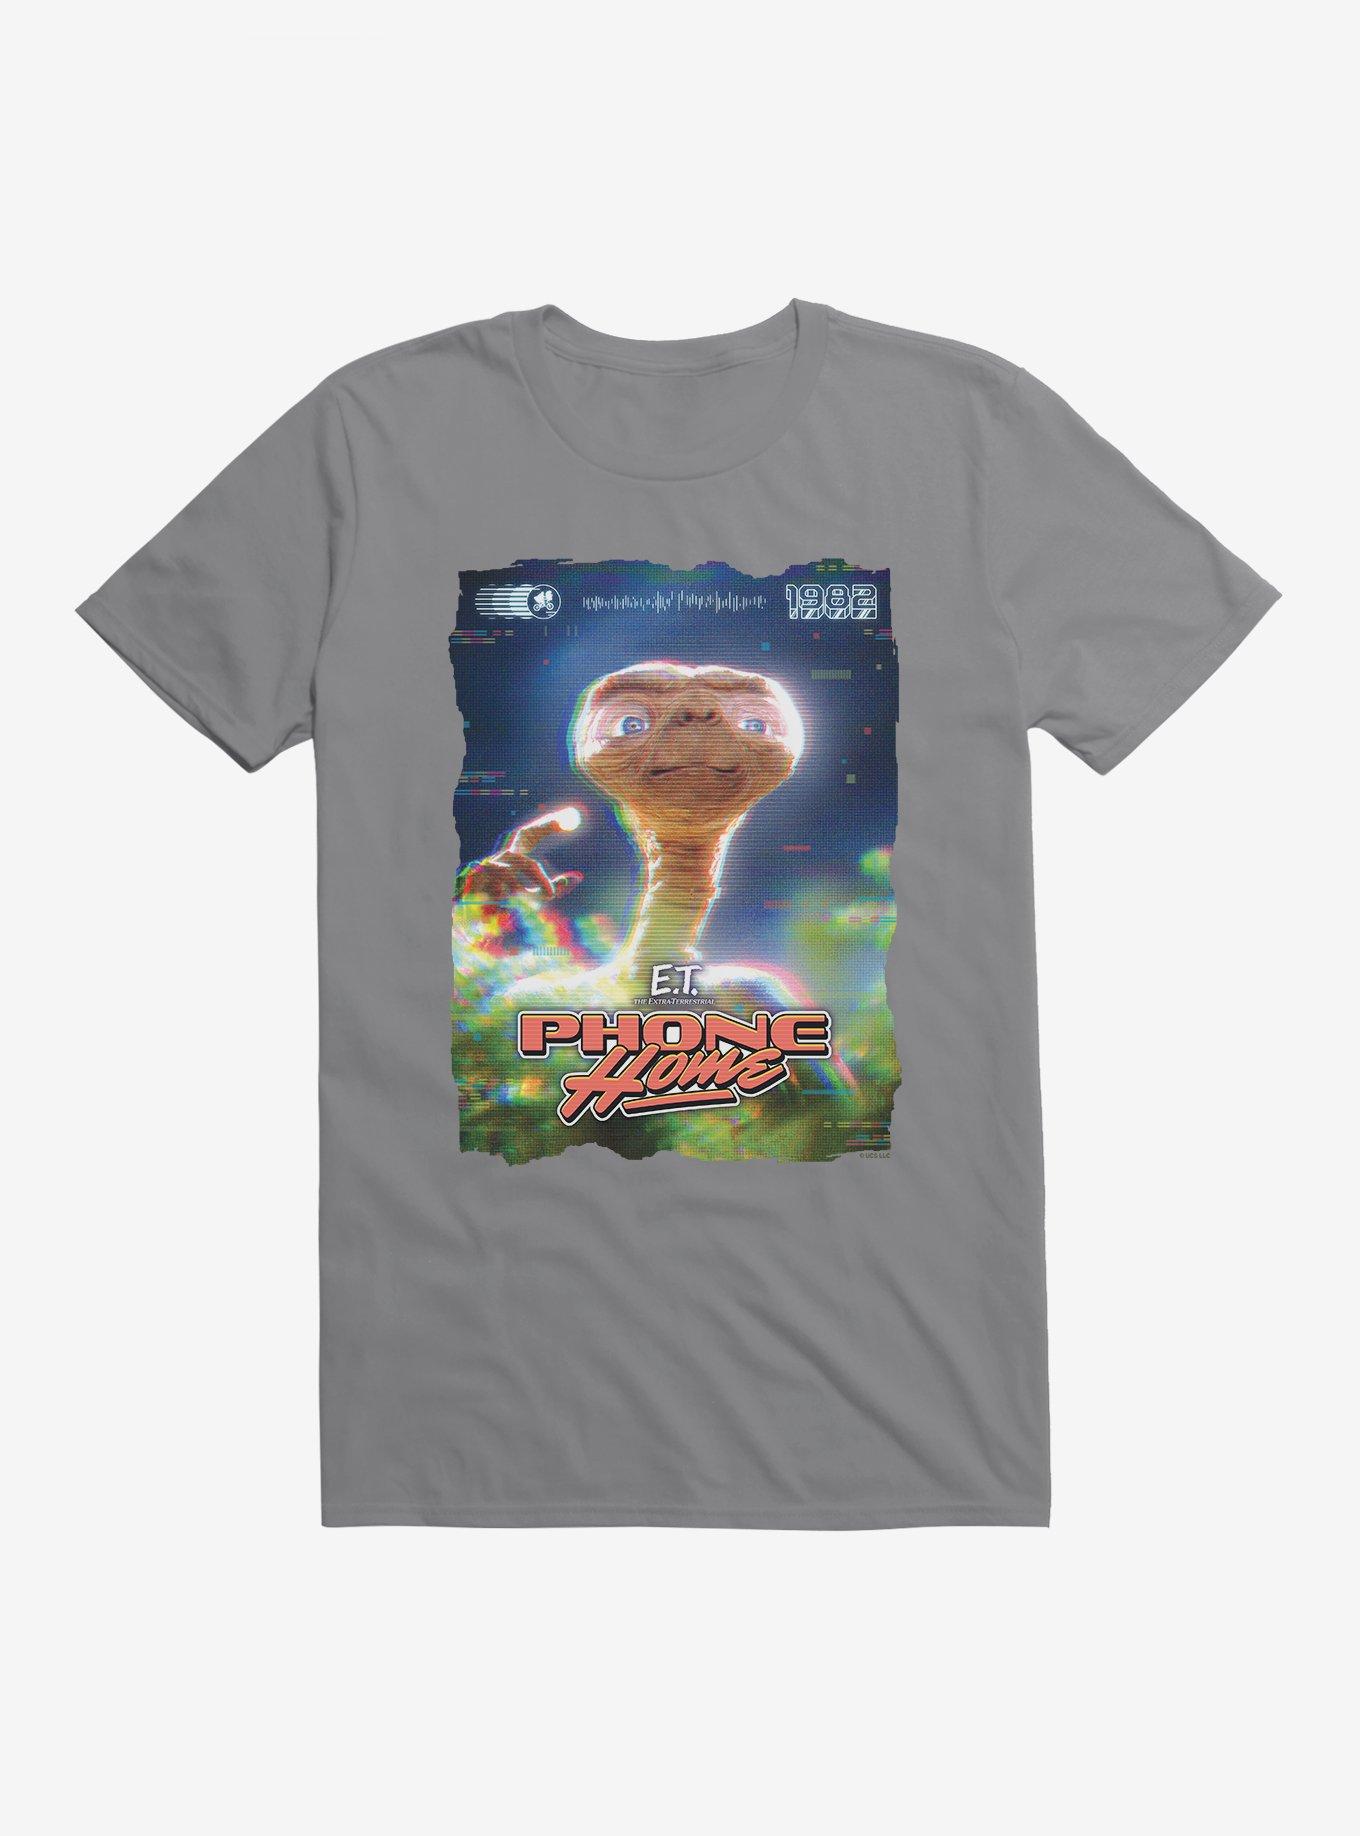 E.T. Phone Home 1982 82 T-Shirt, , hi-res